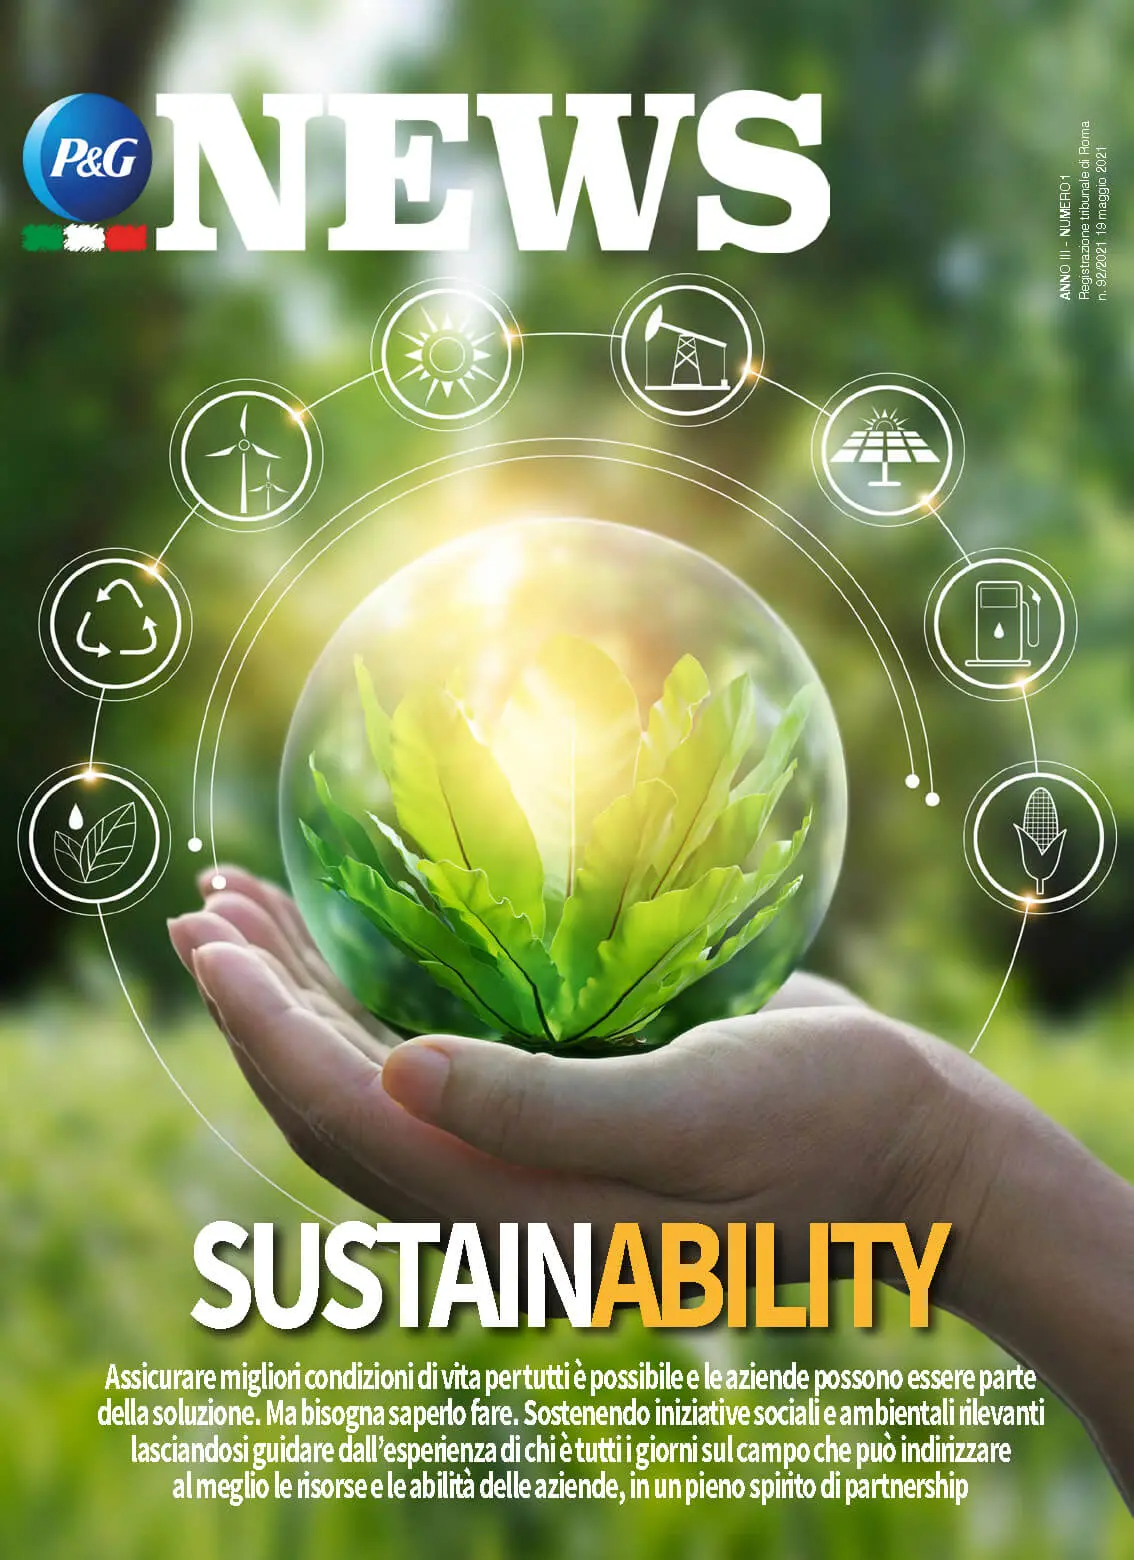 Copertina Magazine Anno 3 numero 1. Titolo "SustainAbility".